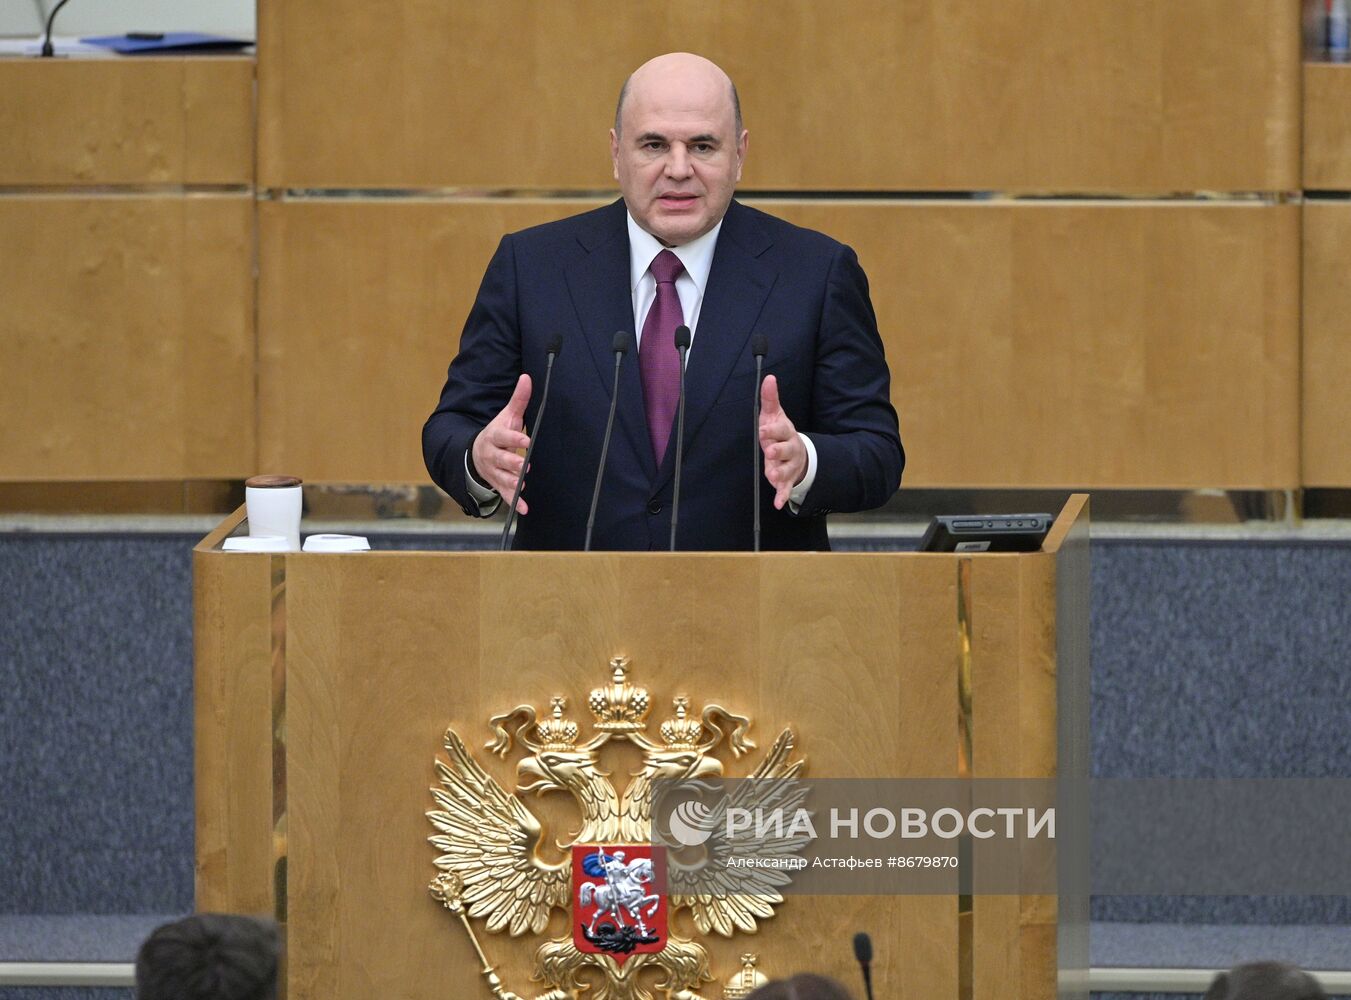 Утверждение кандидатуры председателя правительства в Госдуме РФ